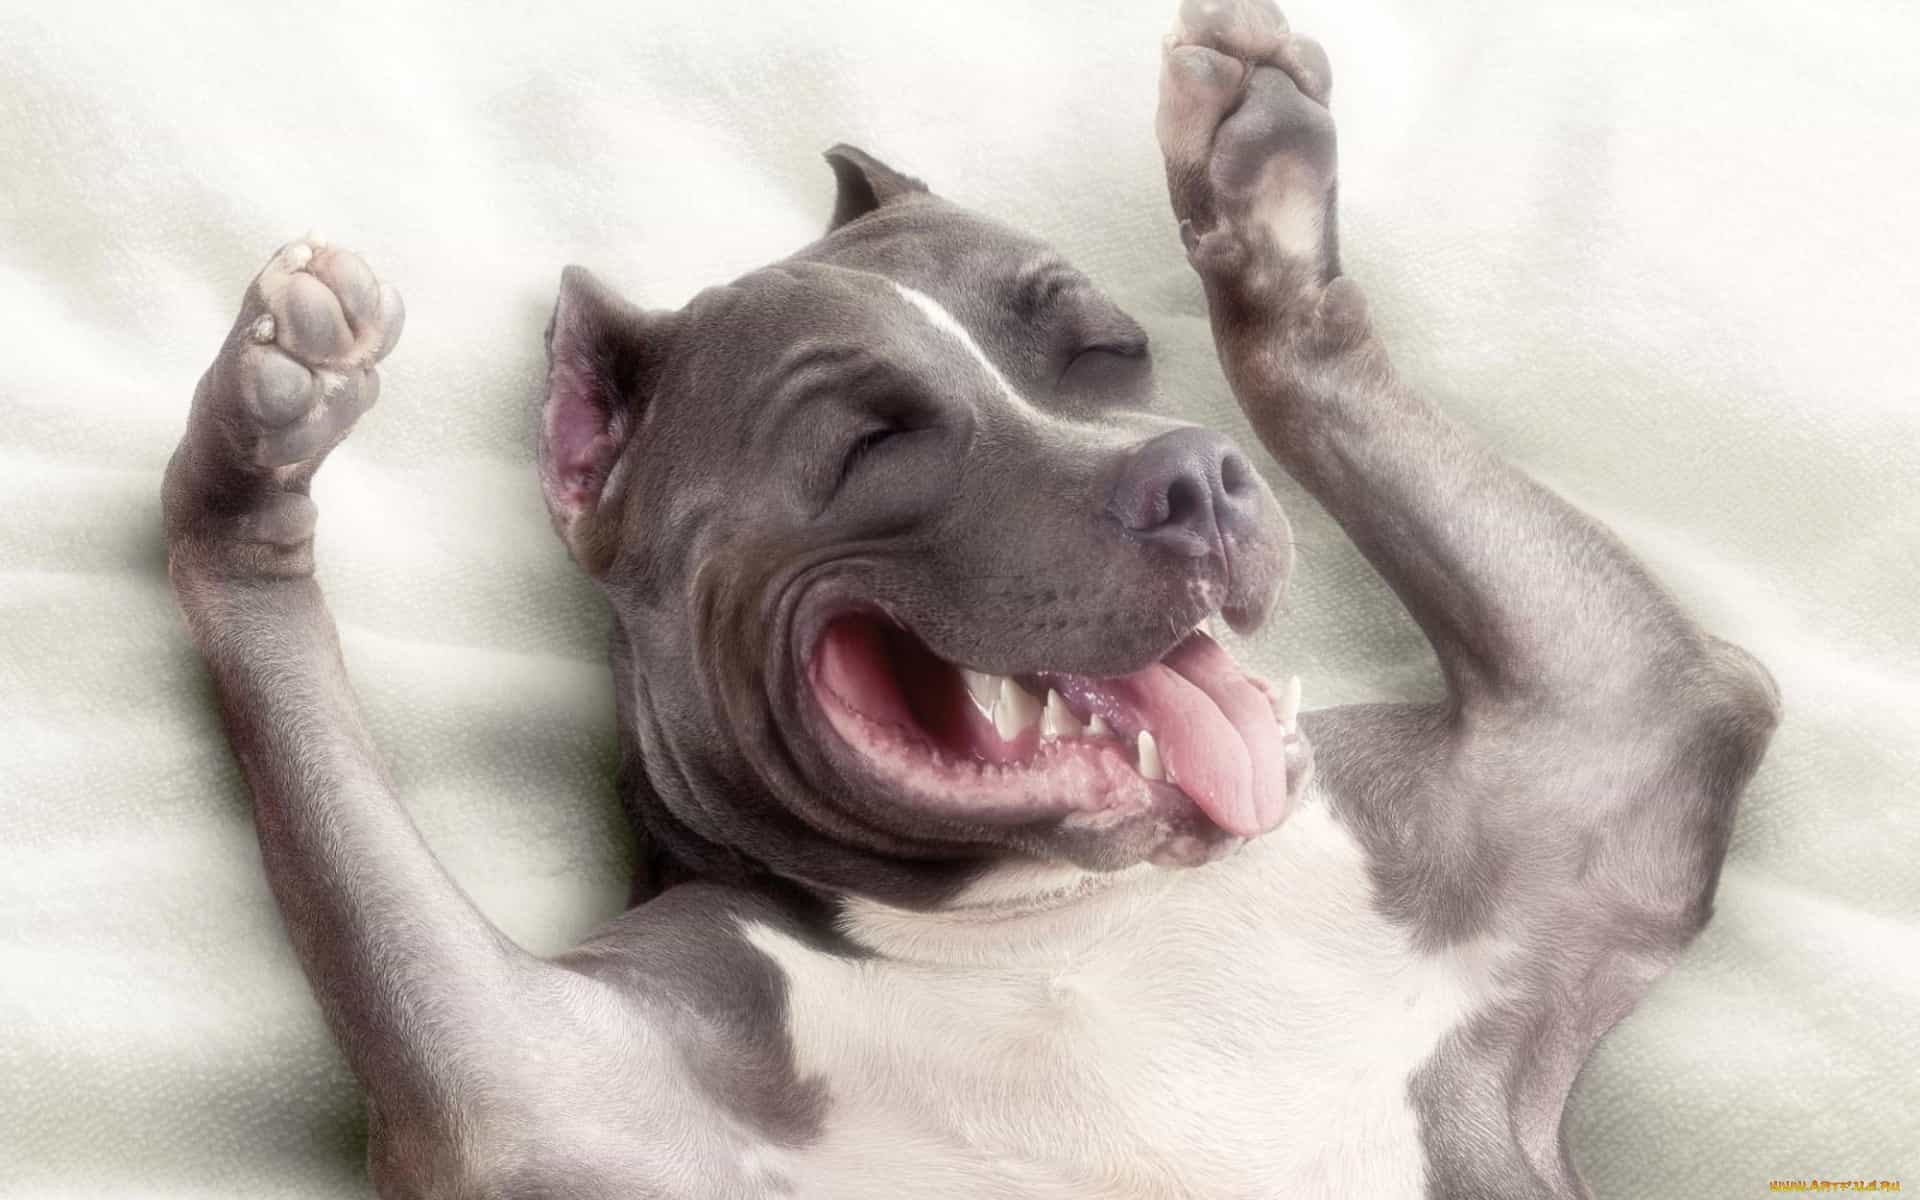 Ảnh chó hài đáng yêu: Hãy truy cập vào ảnh chó hài đáng yêu của chúng tôi. Những bức ảnh này sẽ khiến bạn cười toe toét khi chứng kiến những biểu cảm vui nhộn của những chú chó đáng yêu.